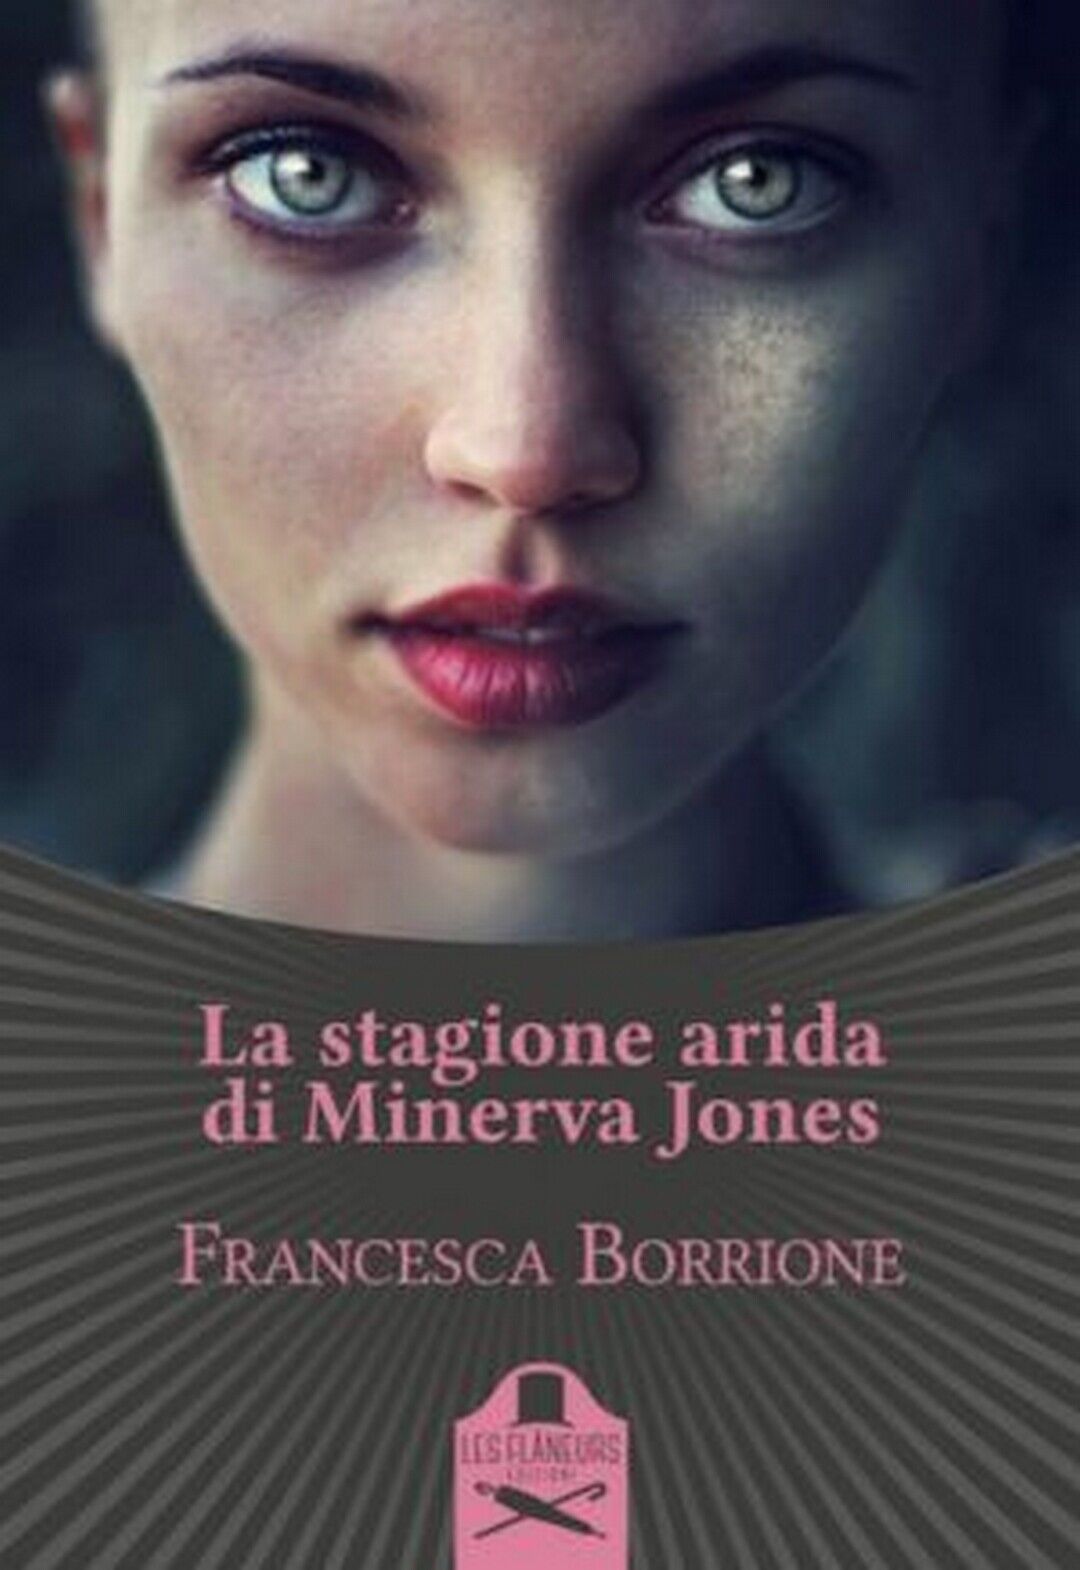 La stagione arida di Minerva Jones  di Francesca Borrione ,  Flaneurs libro usato